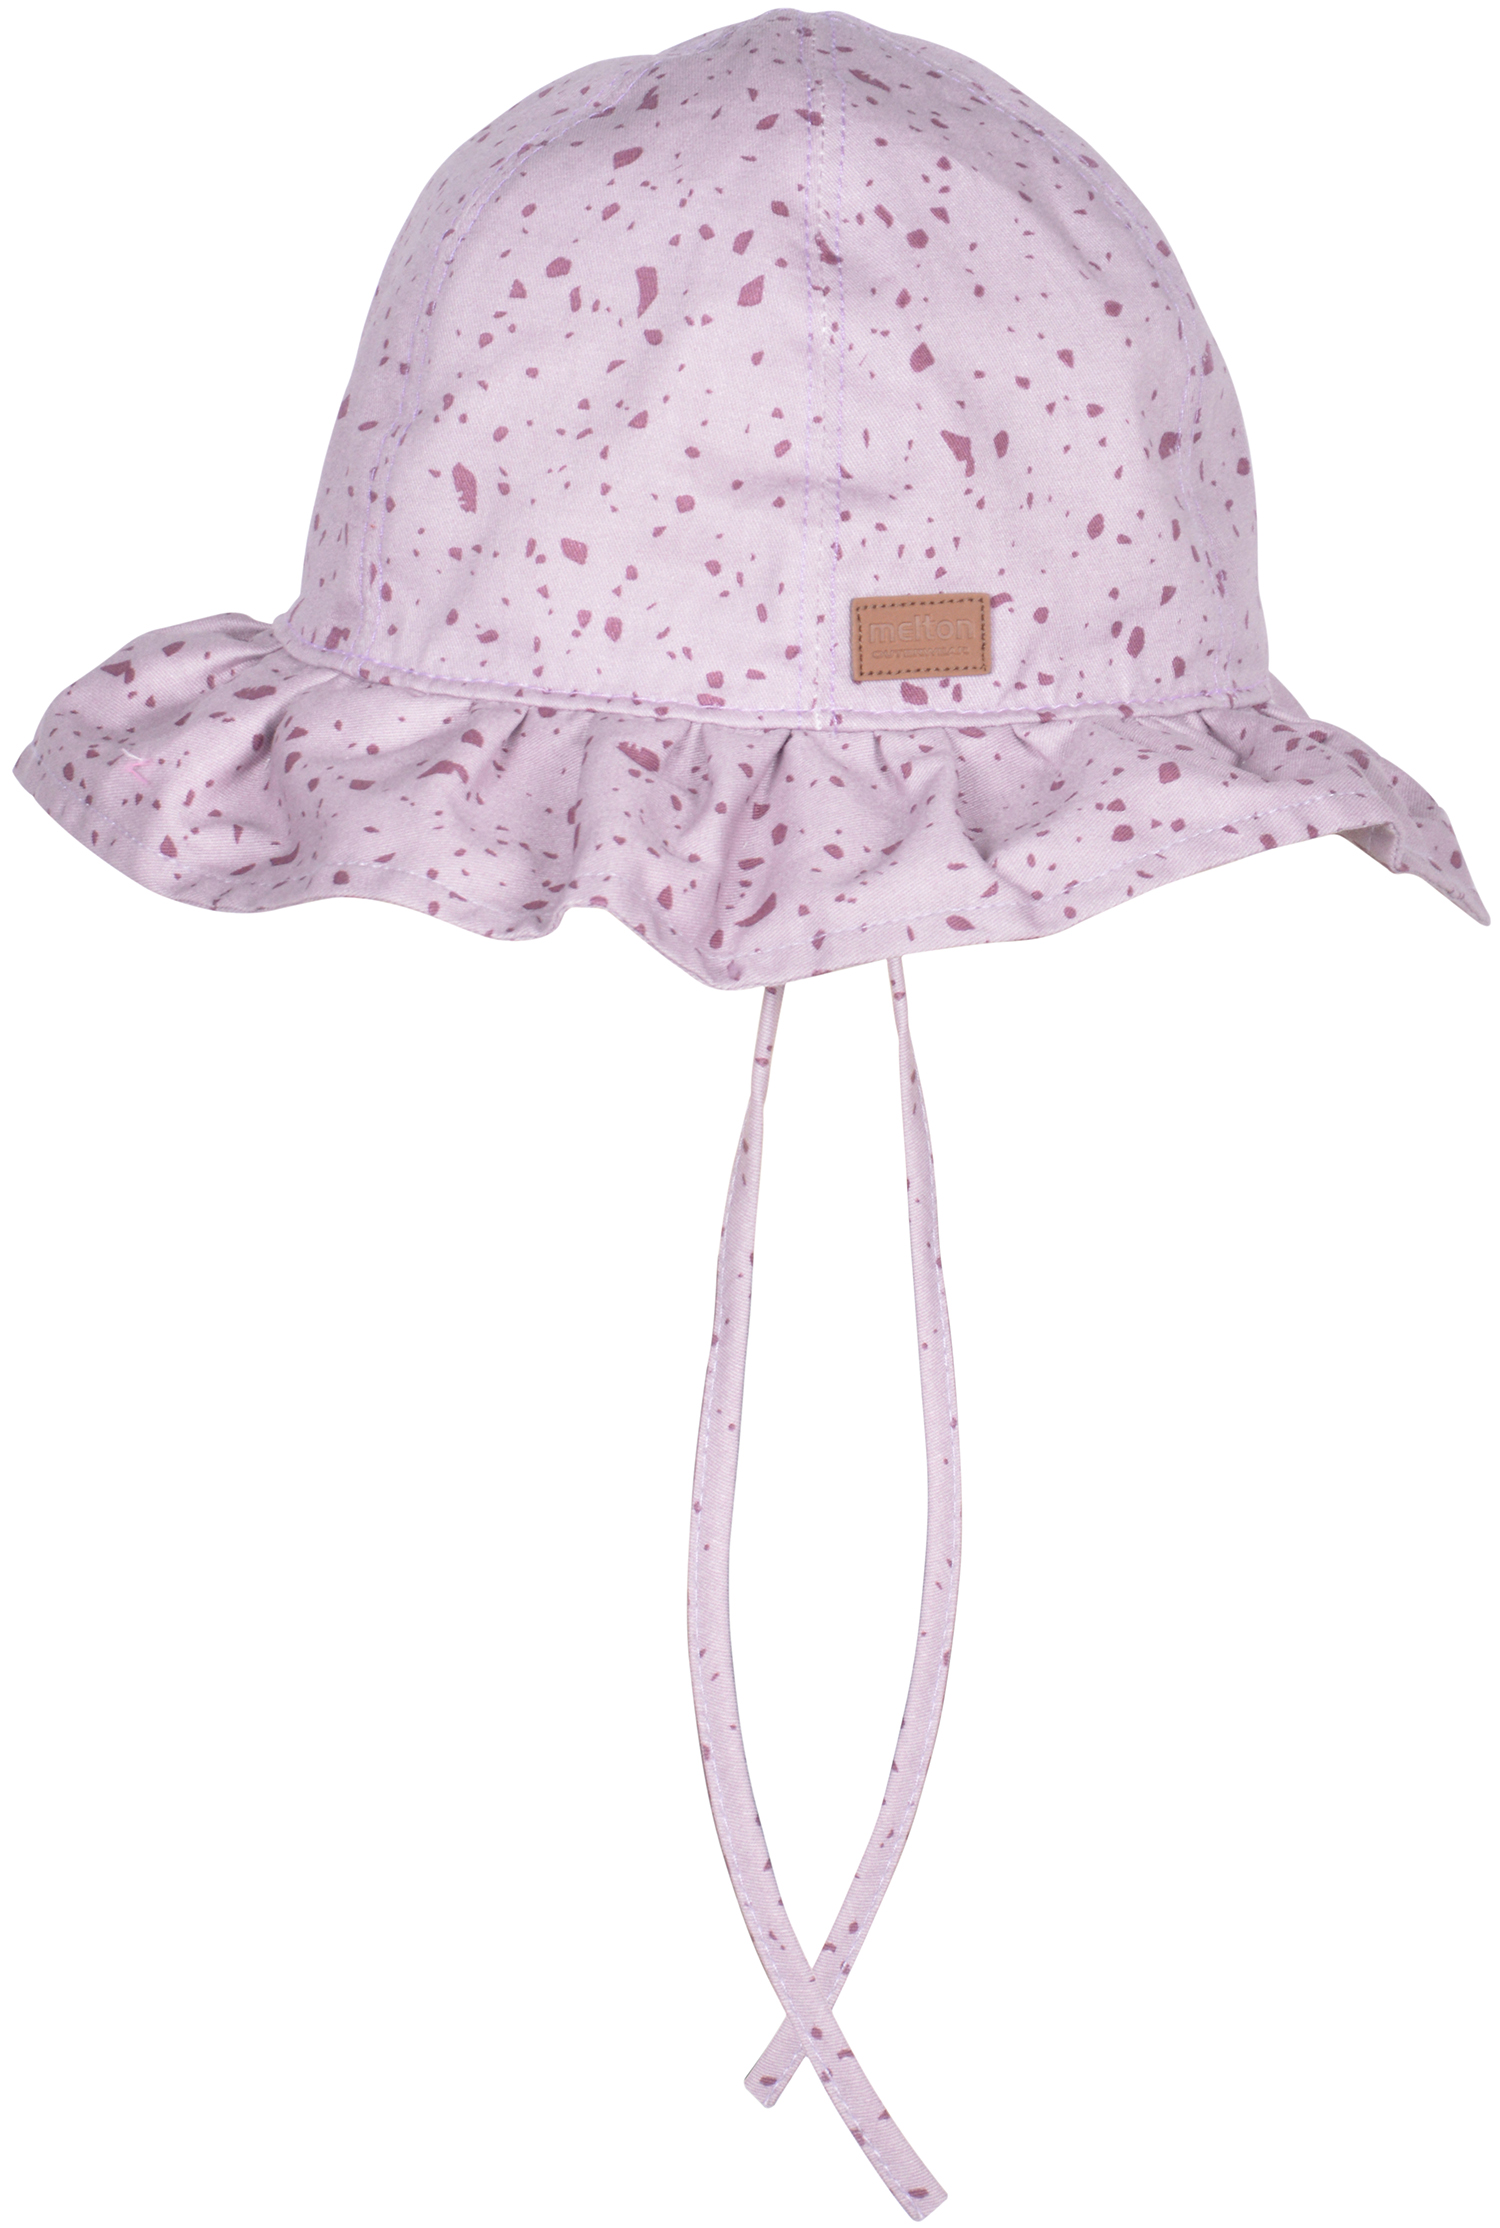 Melton UV30 kaitsega suvemüts, lilla muster Lasteriided - HellyK - Kvaliteetsed lasteriided, villariided, barefoot jalatsid